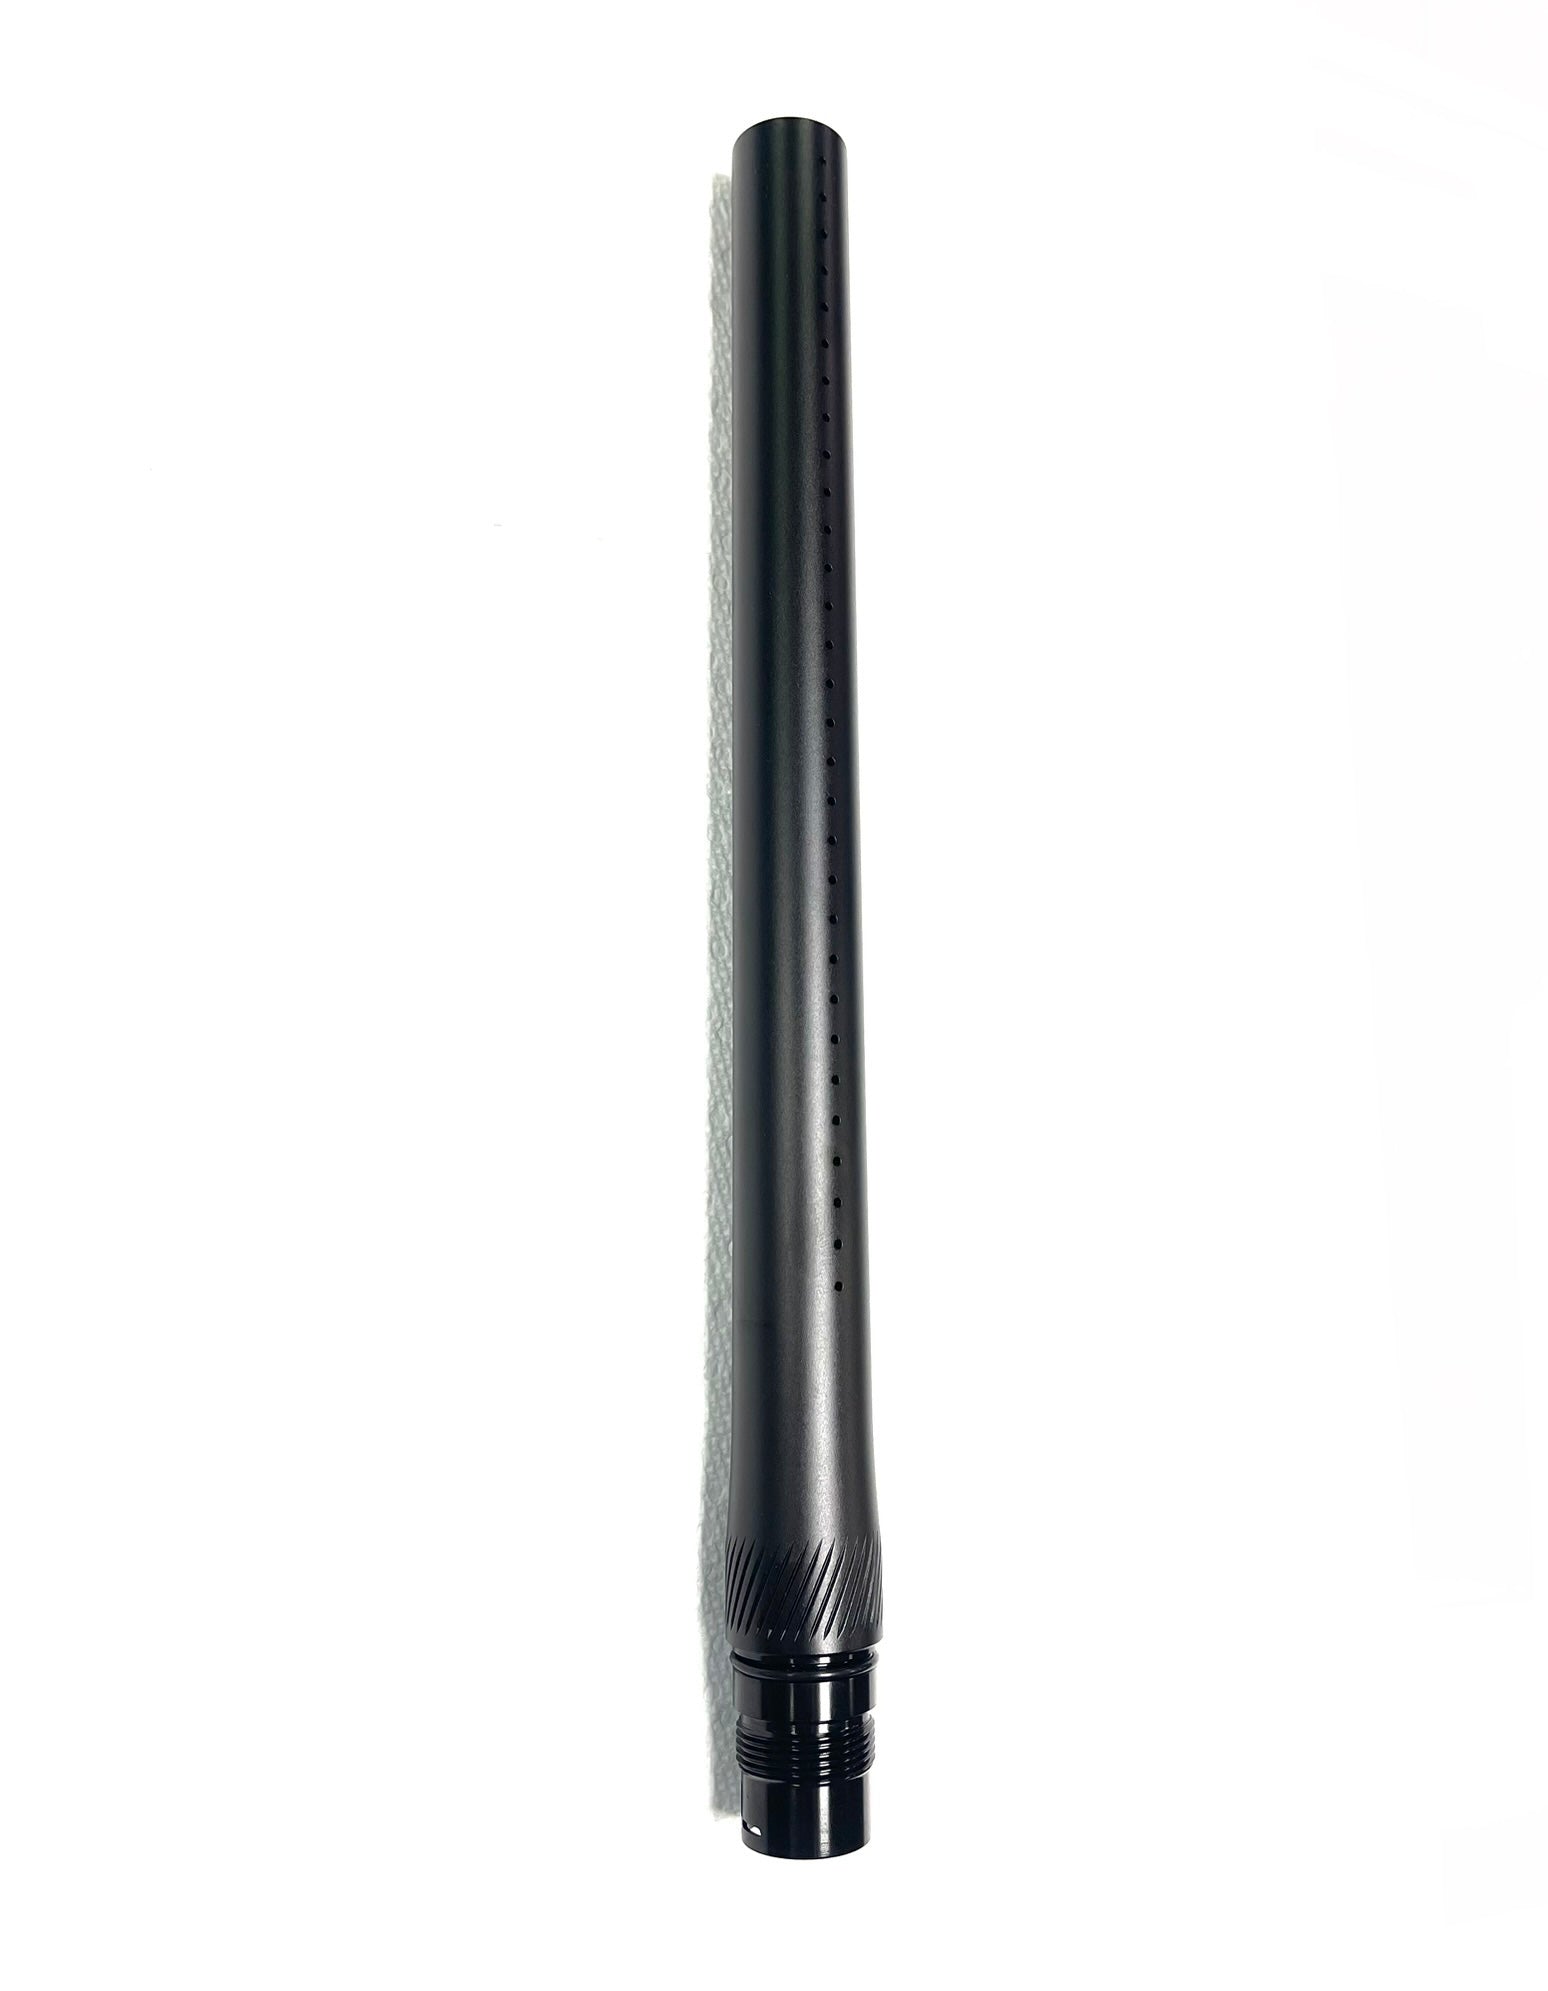 Freak XL Barrel Front - Freak Porting - 16 Inch - Dust Black (New Style)